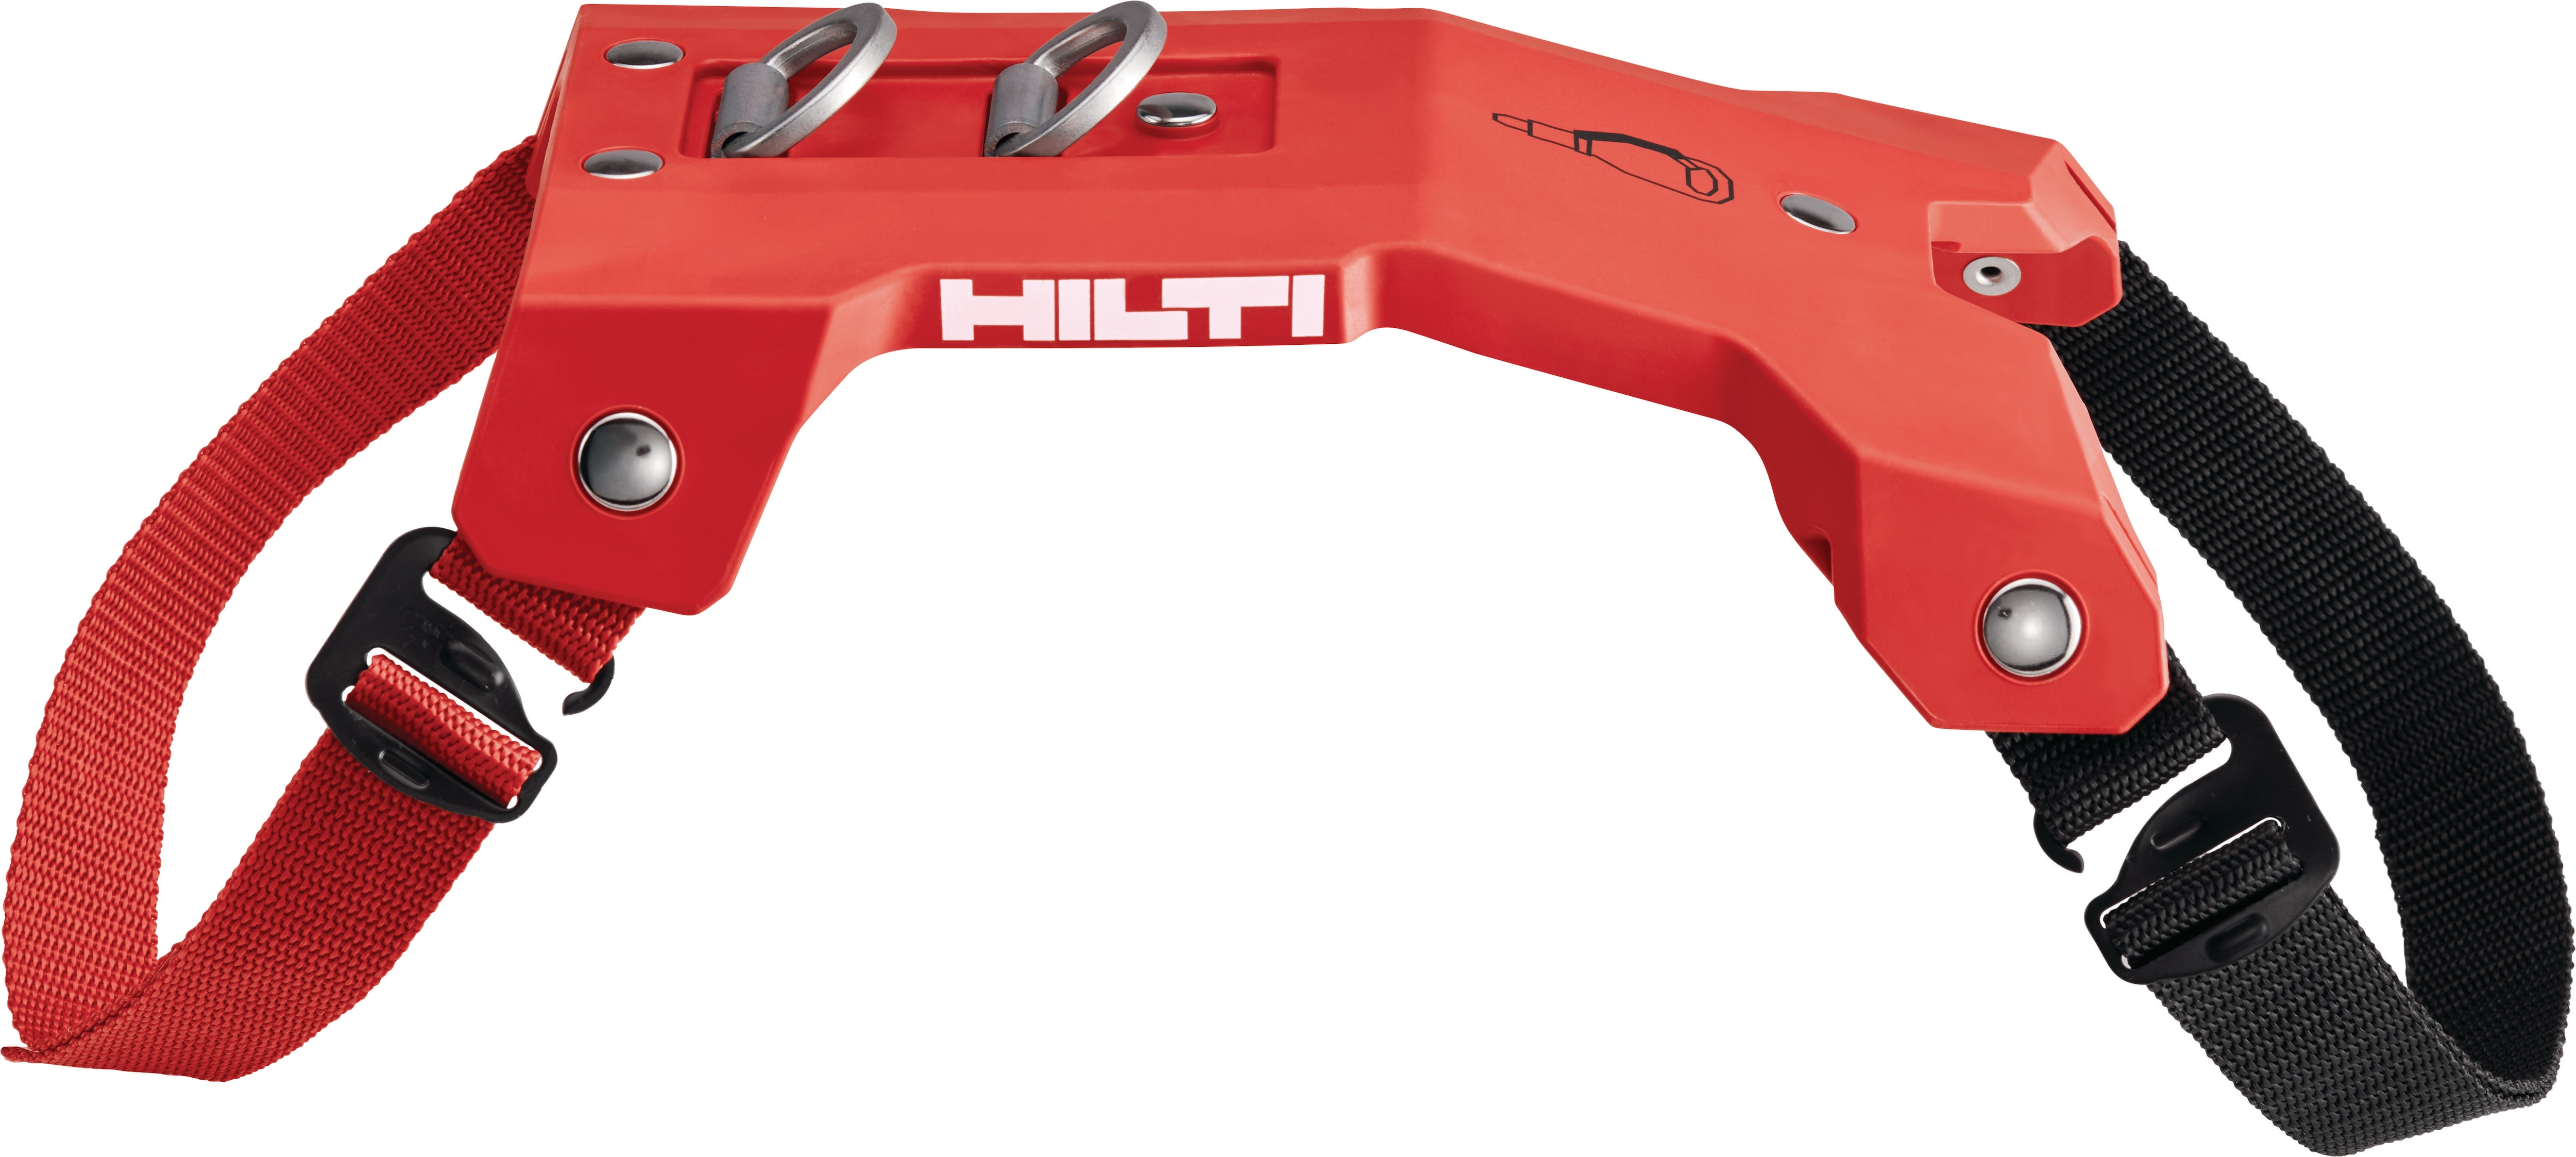 Hilti presentó el equilibrador de herramientas EXO-T-22 en World